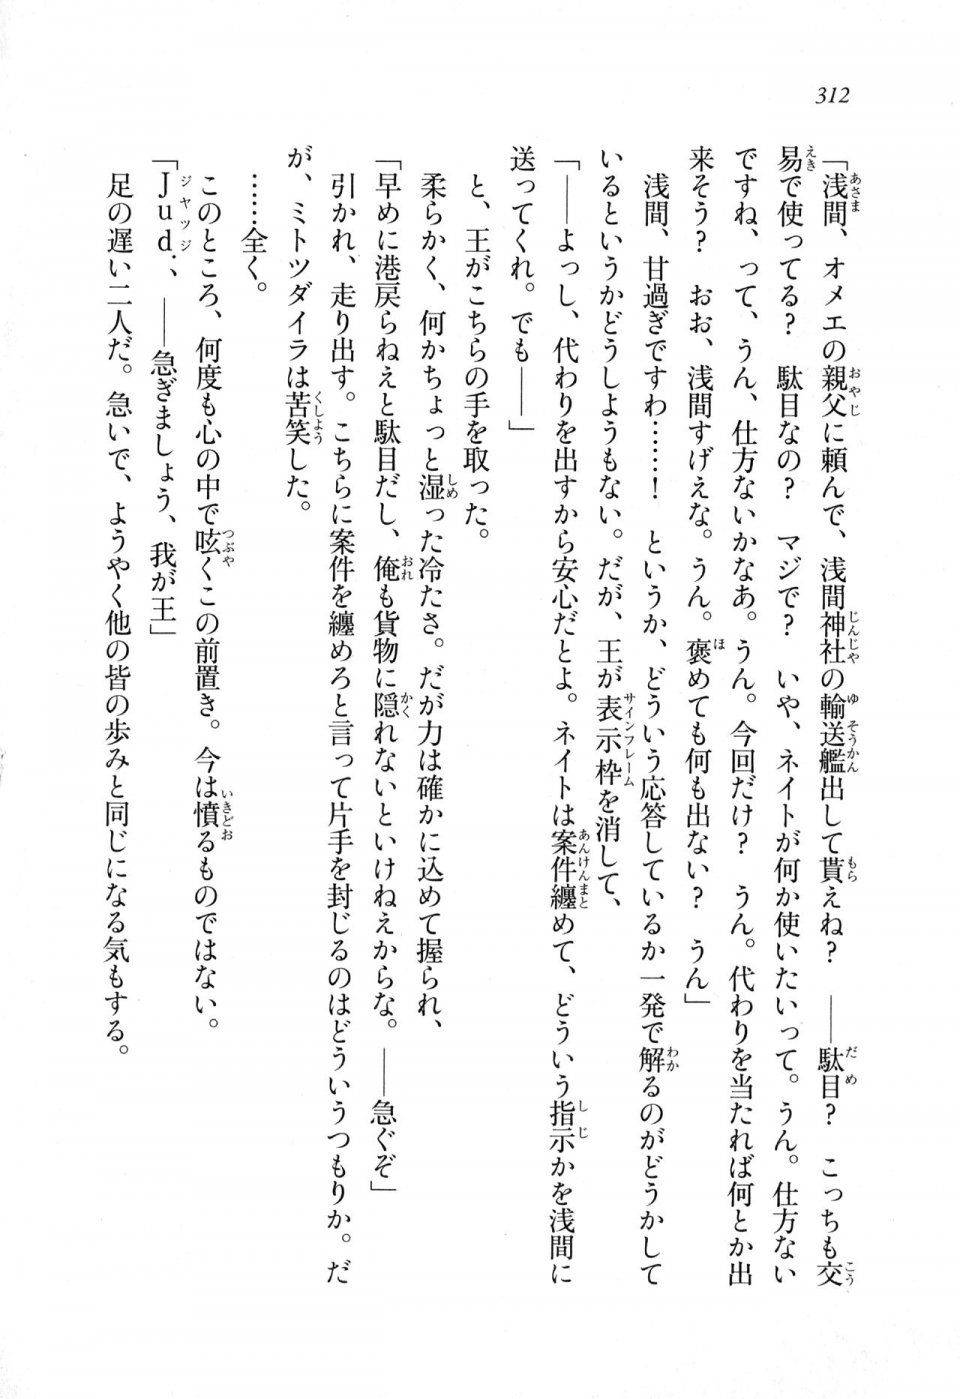 Kyoukai Senjou no Horizon LN Sidestory Vol 1 - Photo #310